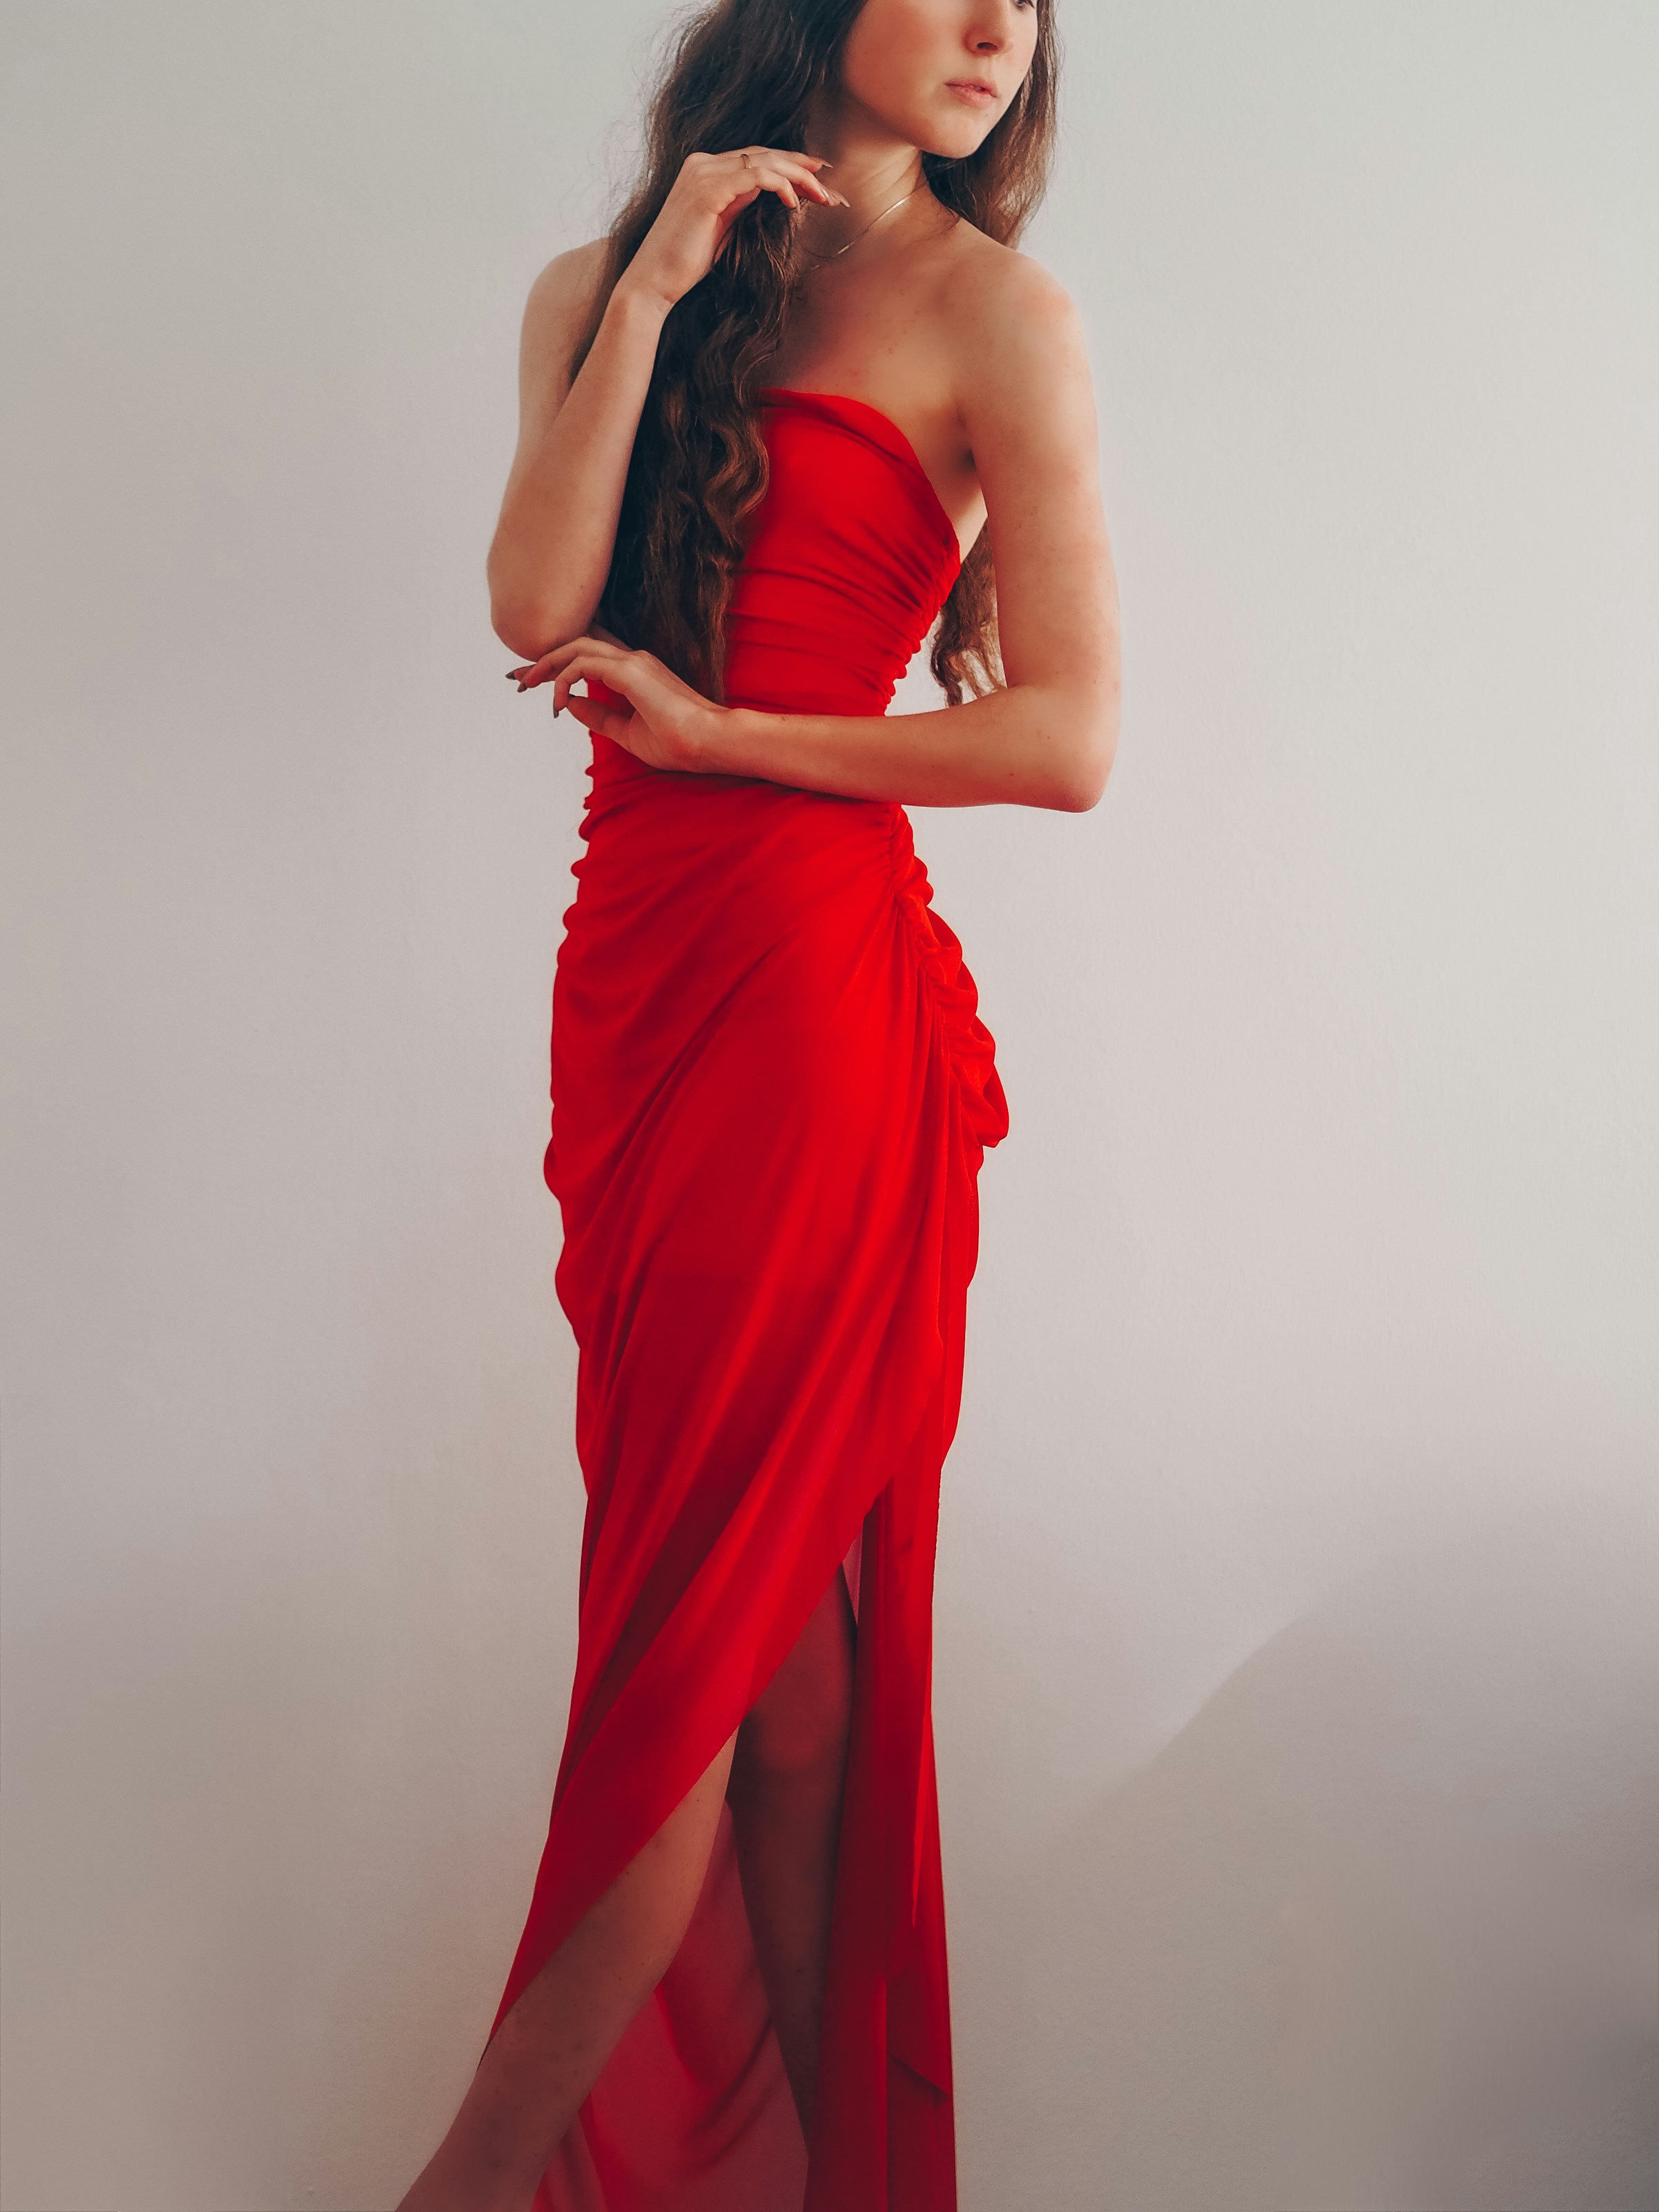 Ein Mädchen in einem roten Kleid | Quelle: Unsplash